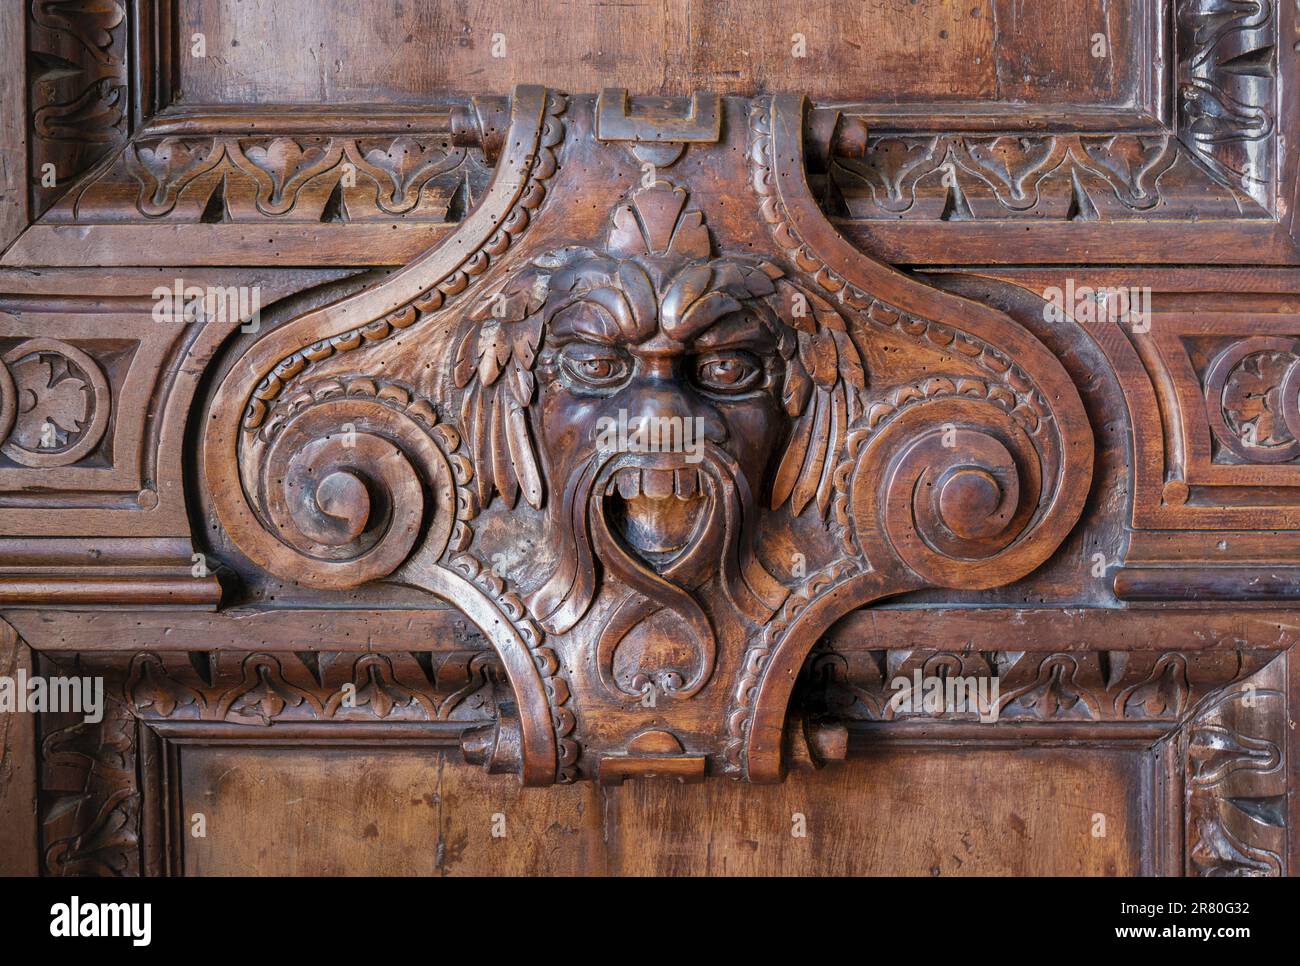 Facciata grottesca intagliata in legno nel Palazzo Ducale o Palazzo Ducale, Venezia, Italia. Venezia è patrimonio dell'umanità dell'UNESCO. Foto Stock